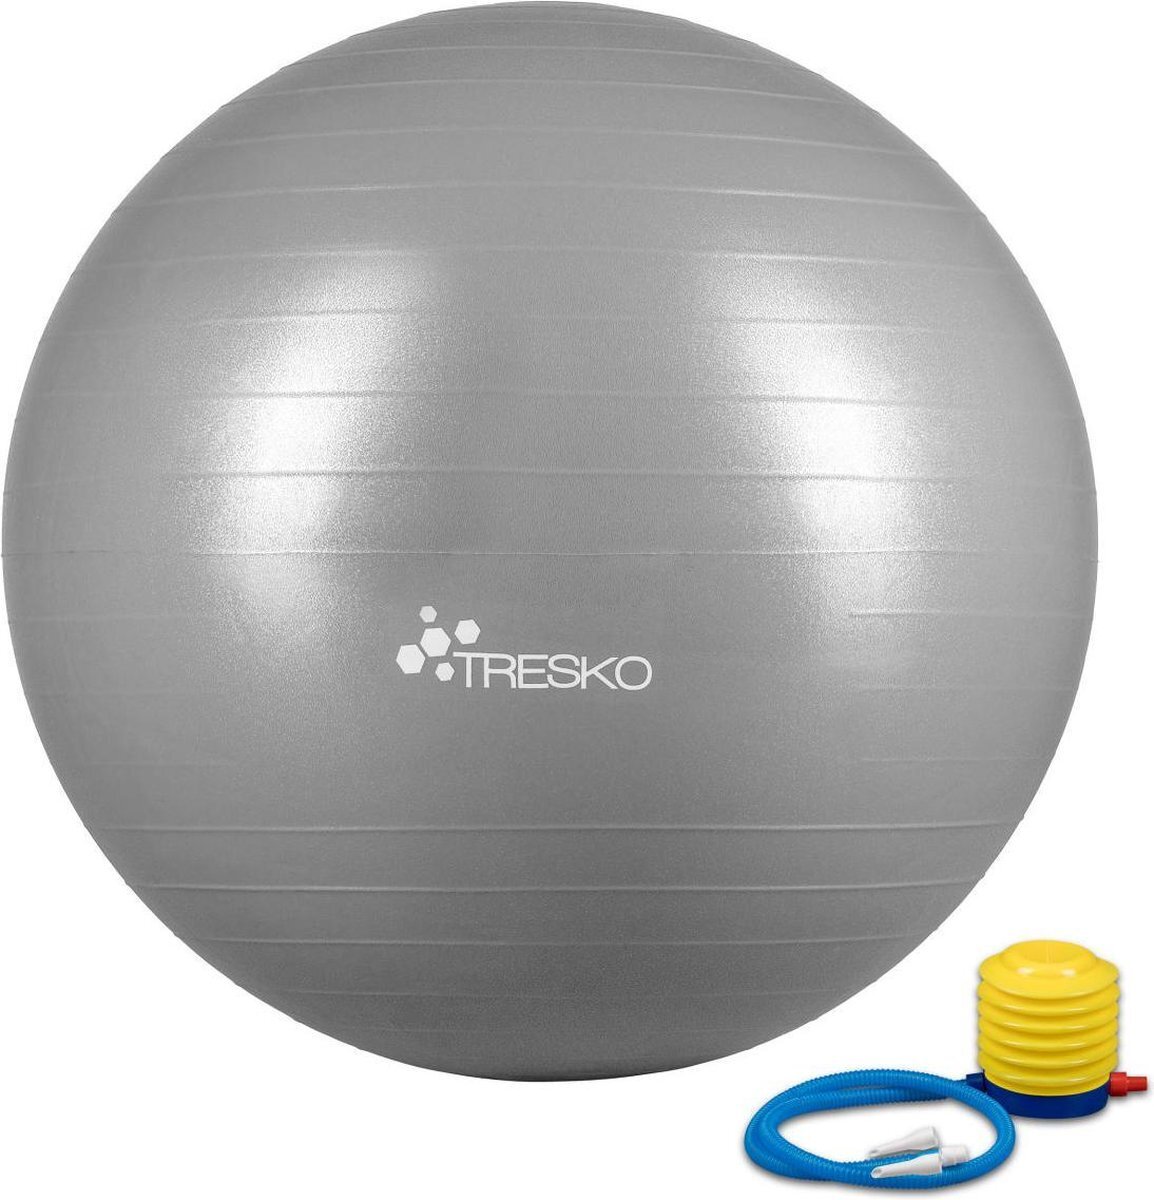 Tresko Fitnessbal met pomp - diameter 75 cm - Grijs